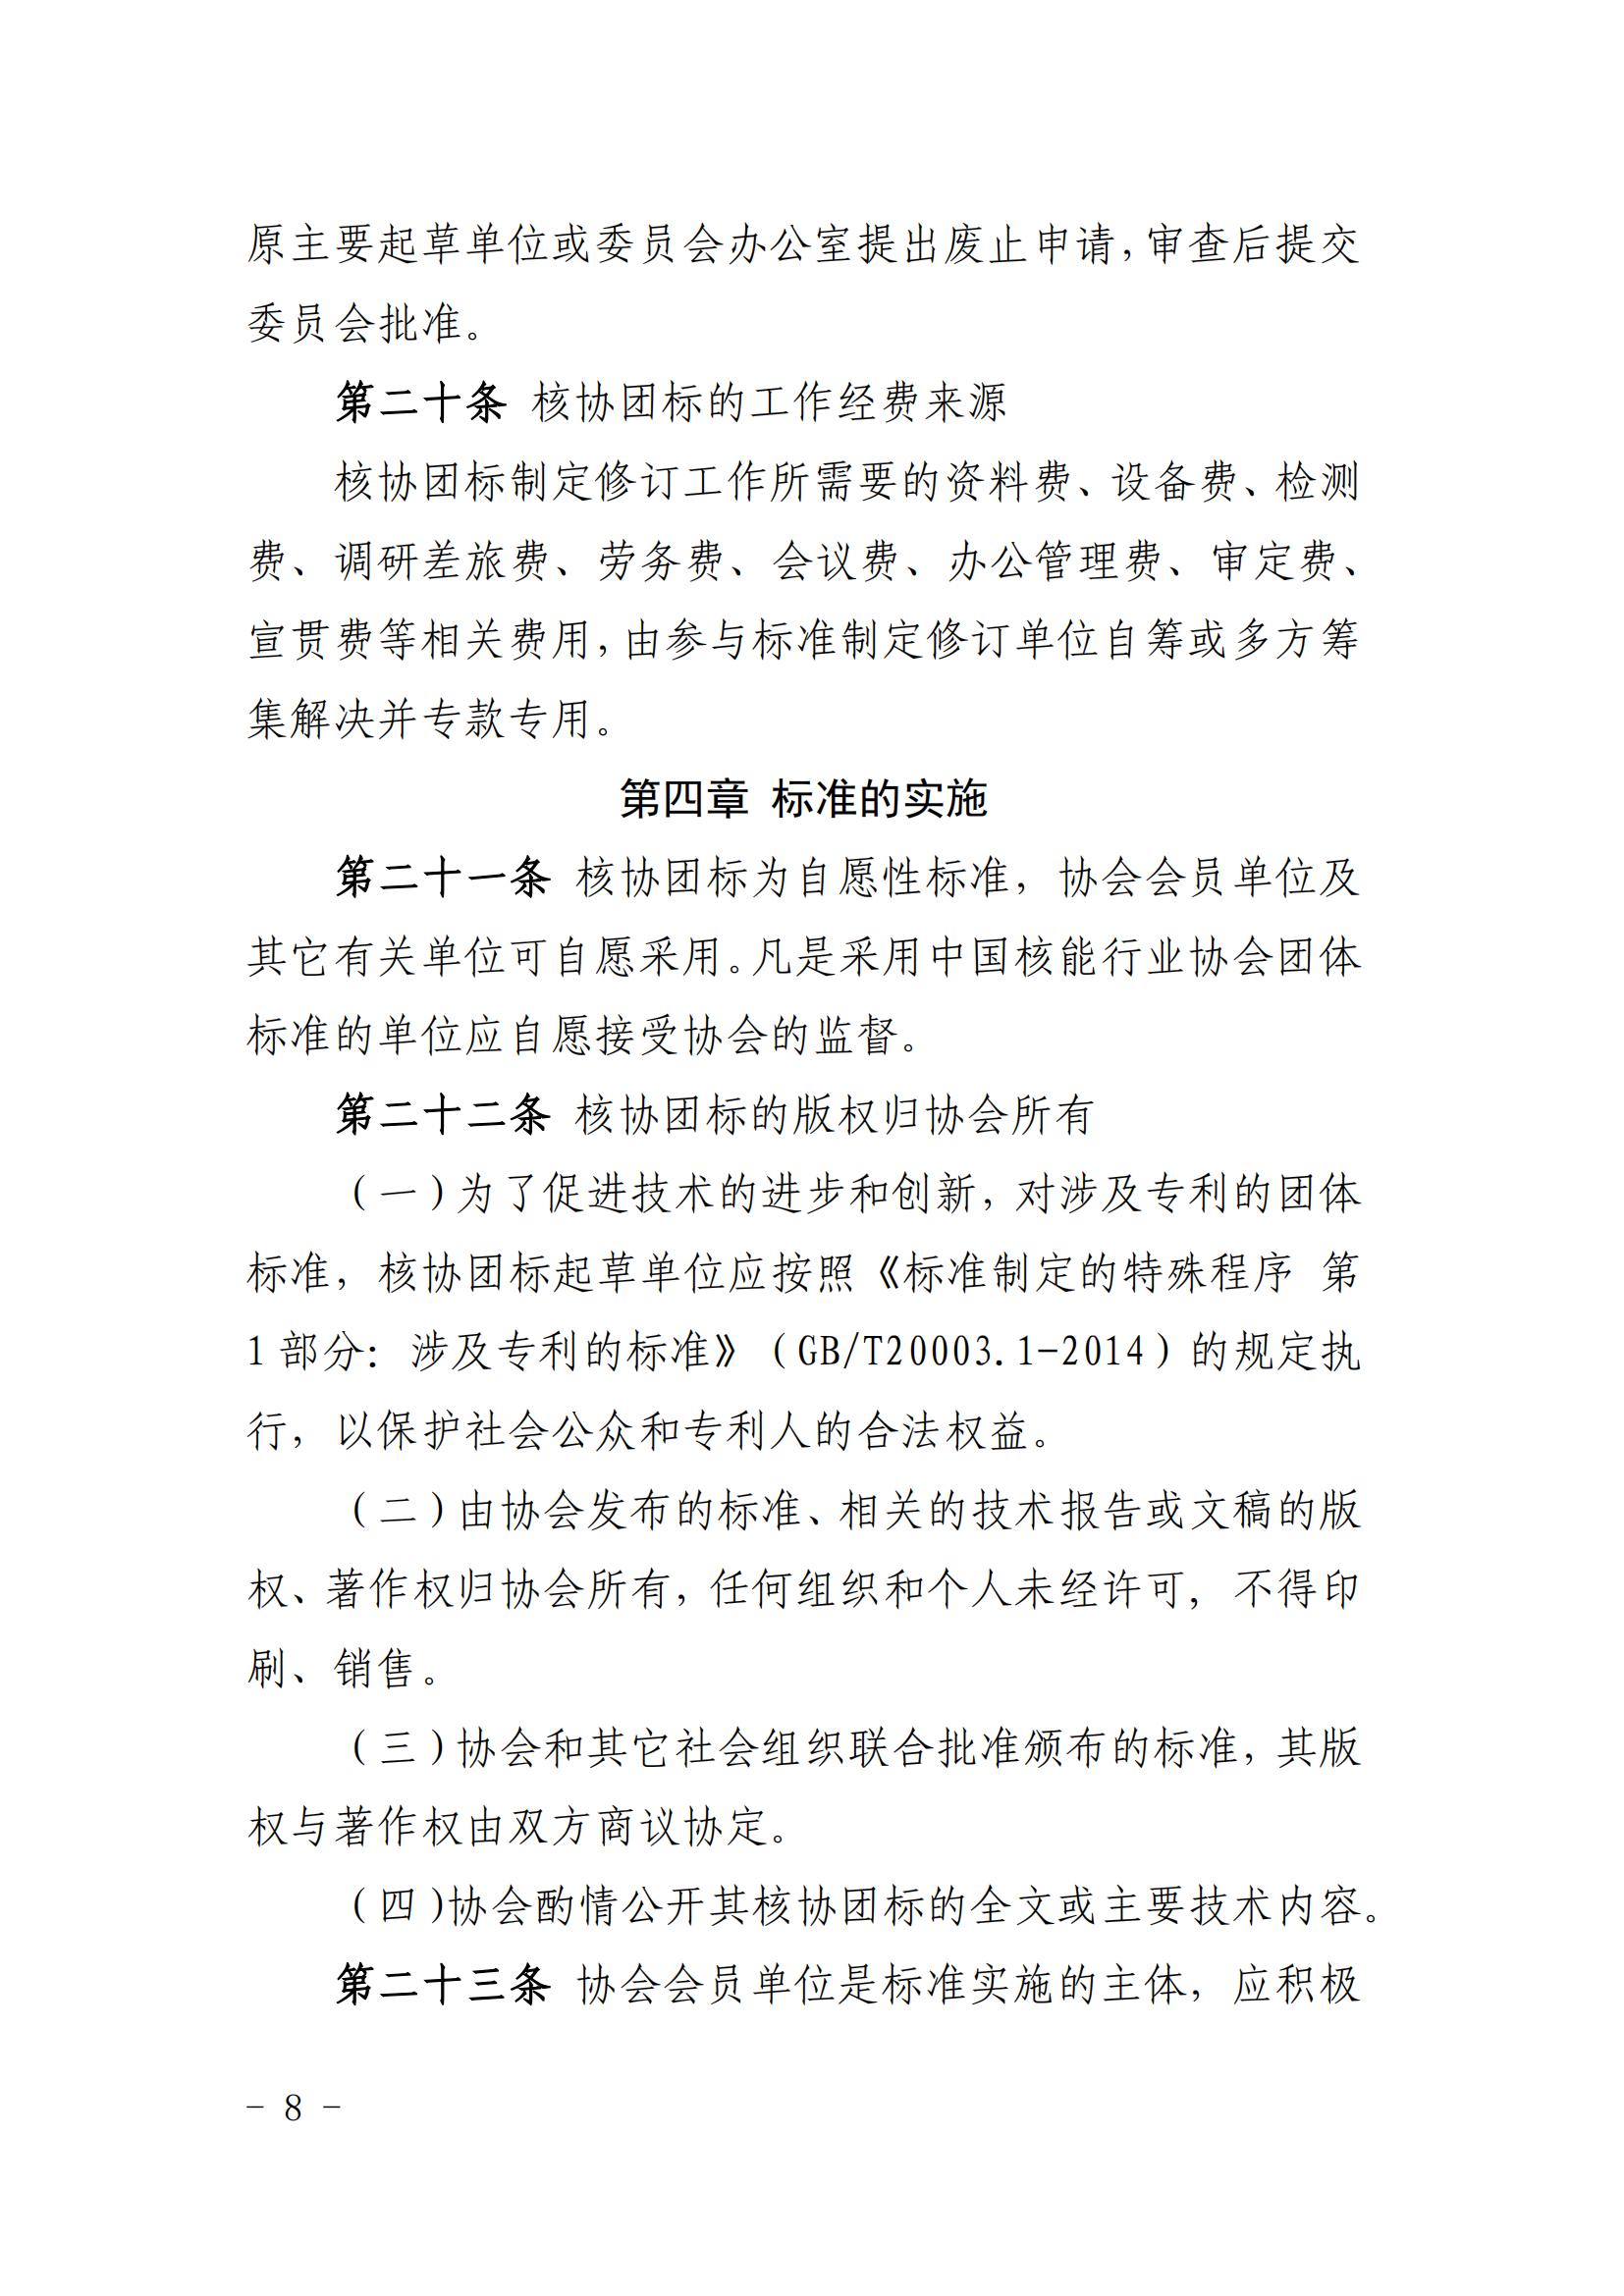 关于印发《中国核能行业协会团体标准管理办法（试行）》和《中国核能行业协会团体标准制修订细则（试行）》的通知_07.jpg